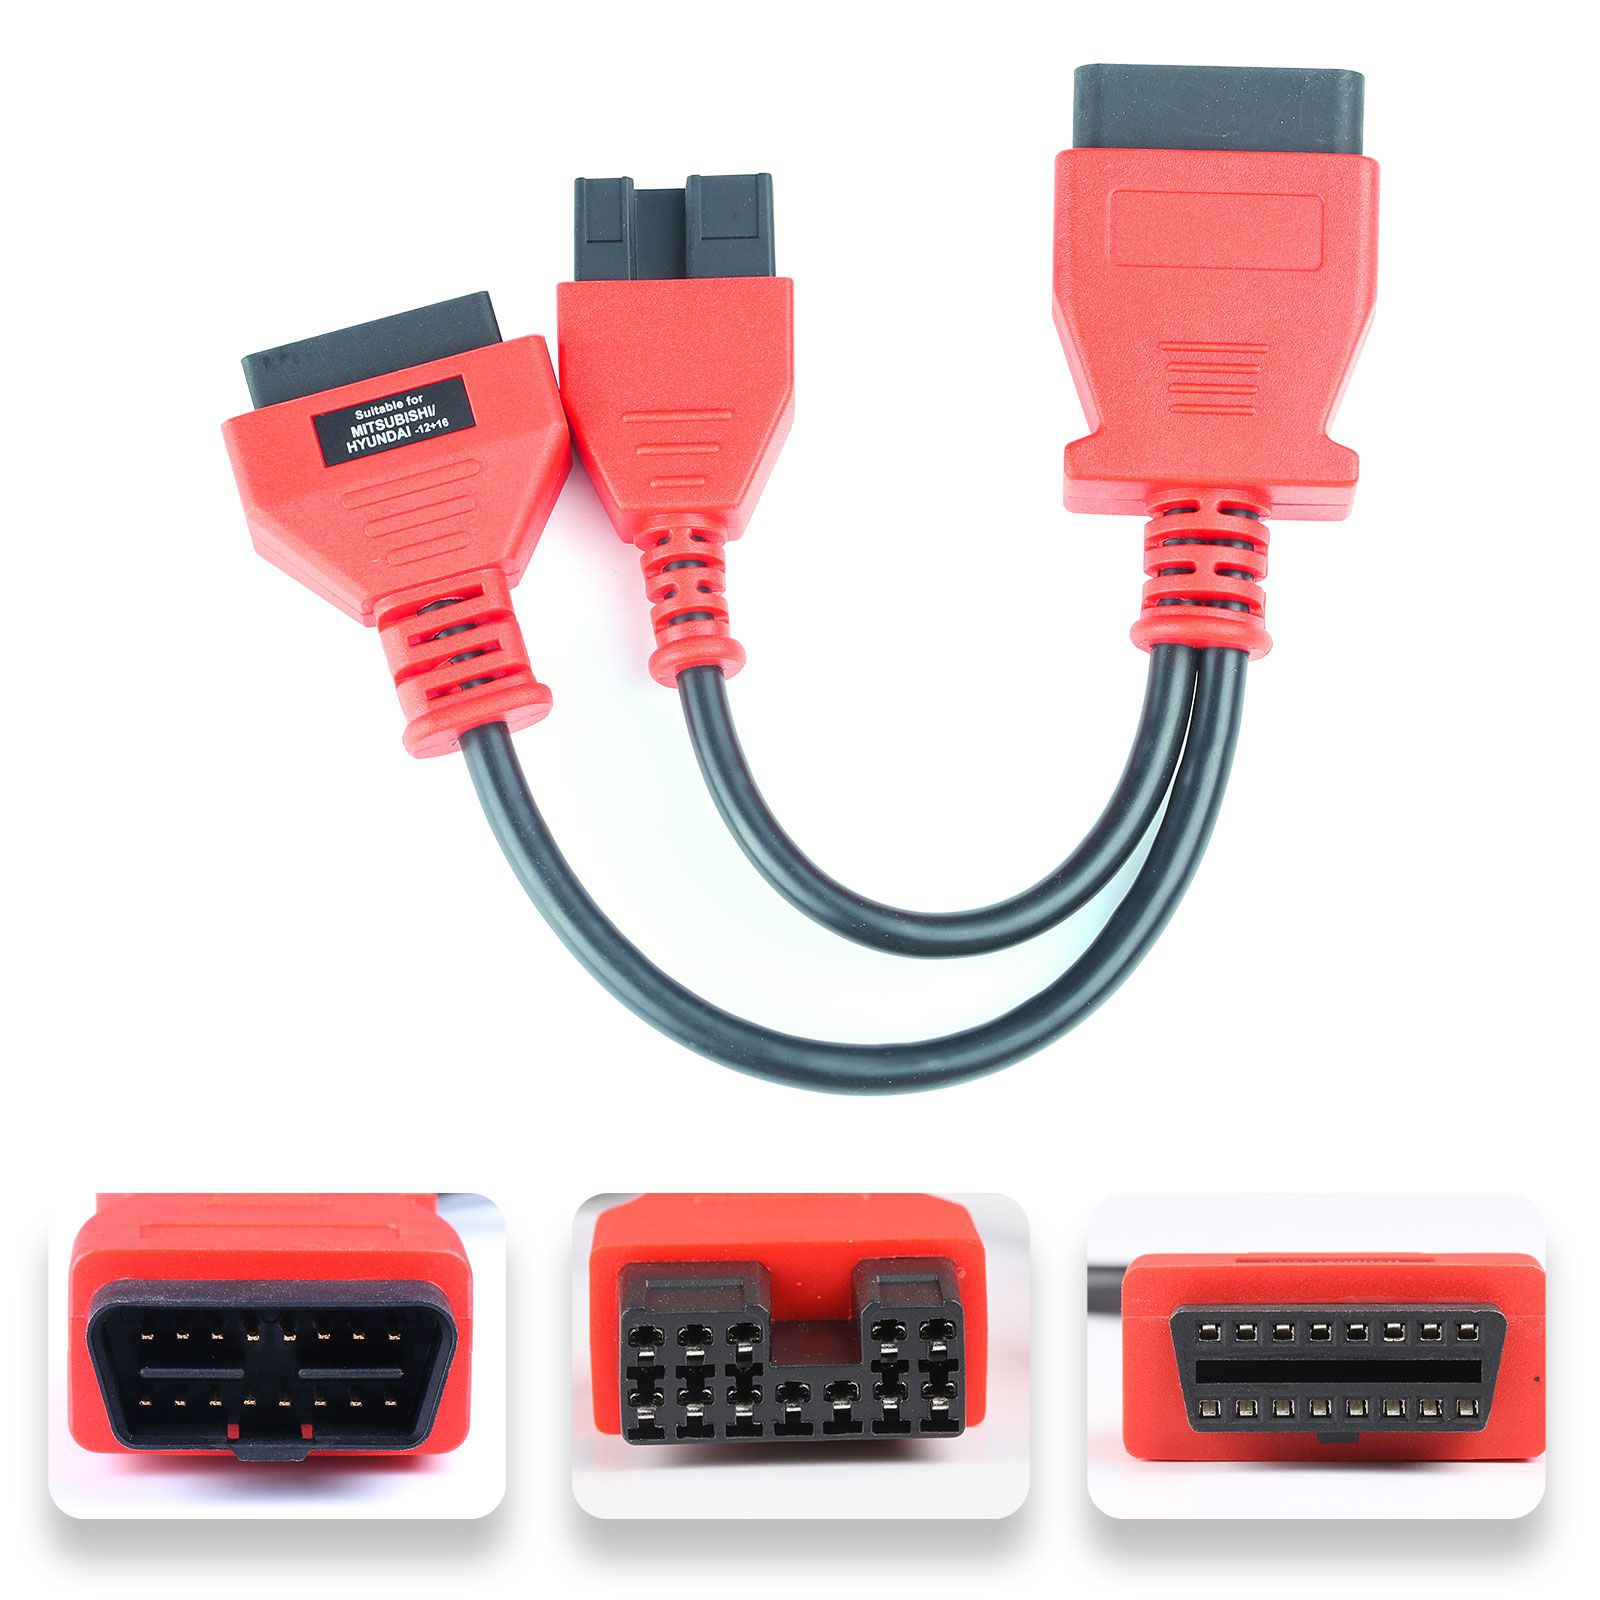 Autel ensemble complet de câbles et de connecteurs OBDII pour ds808 / mk808 / mp808 (câbles et connecteurs uniquement)